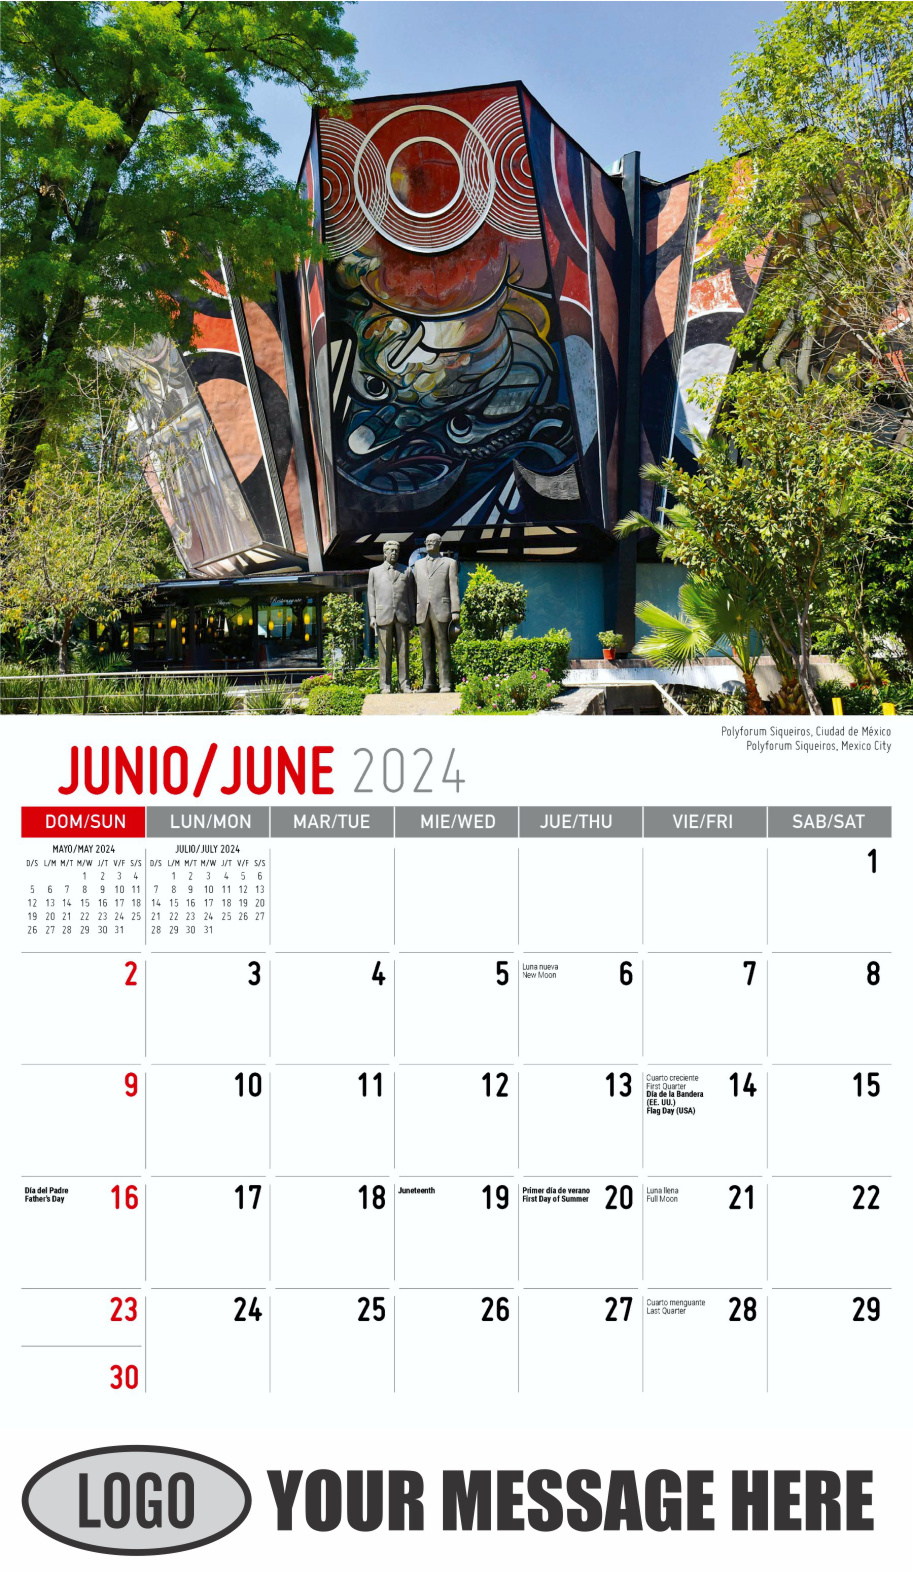 2024 Calendar Scenes Of Mexico 0159 07 